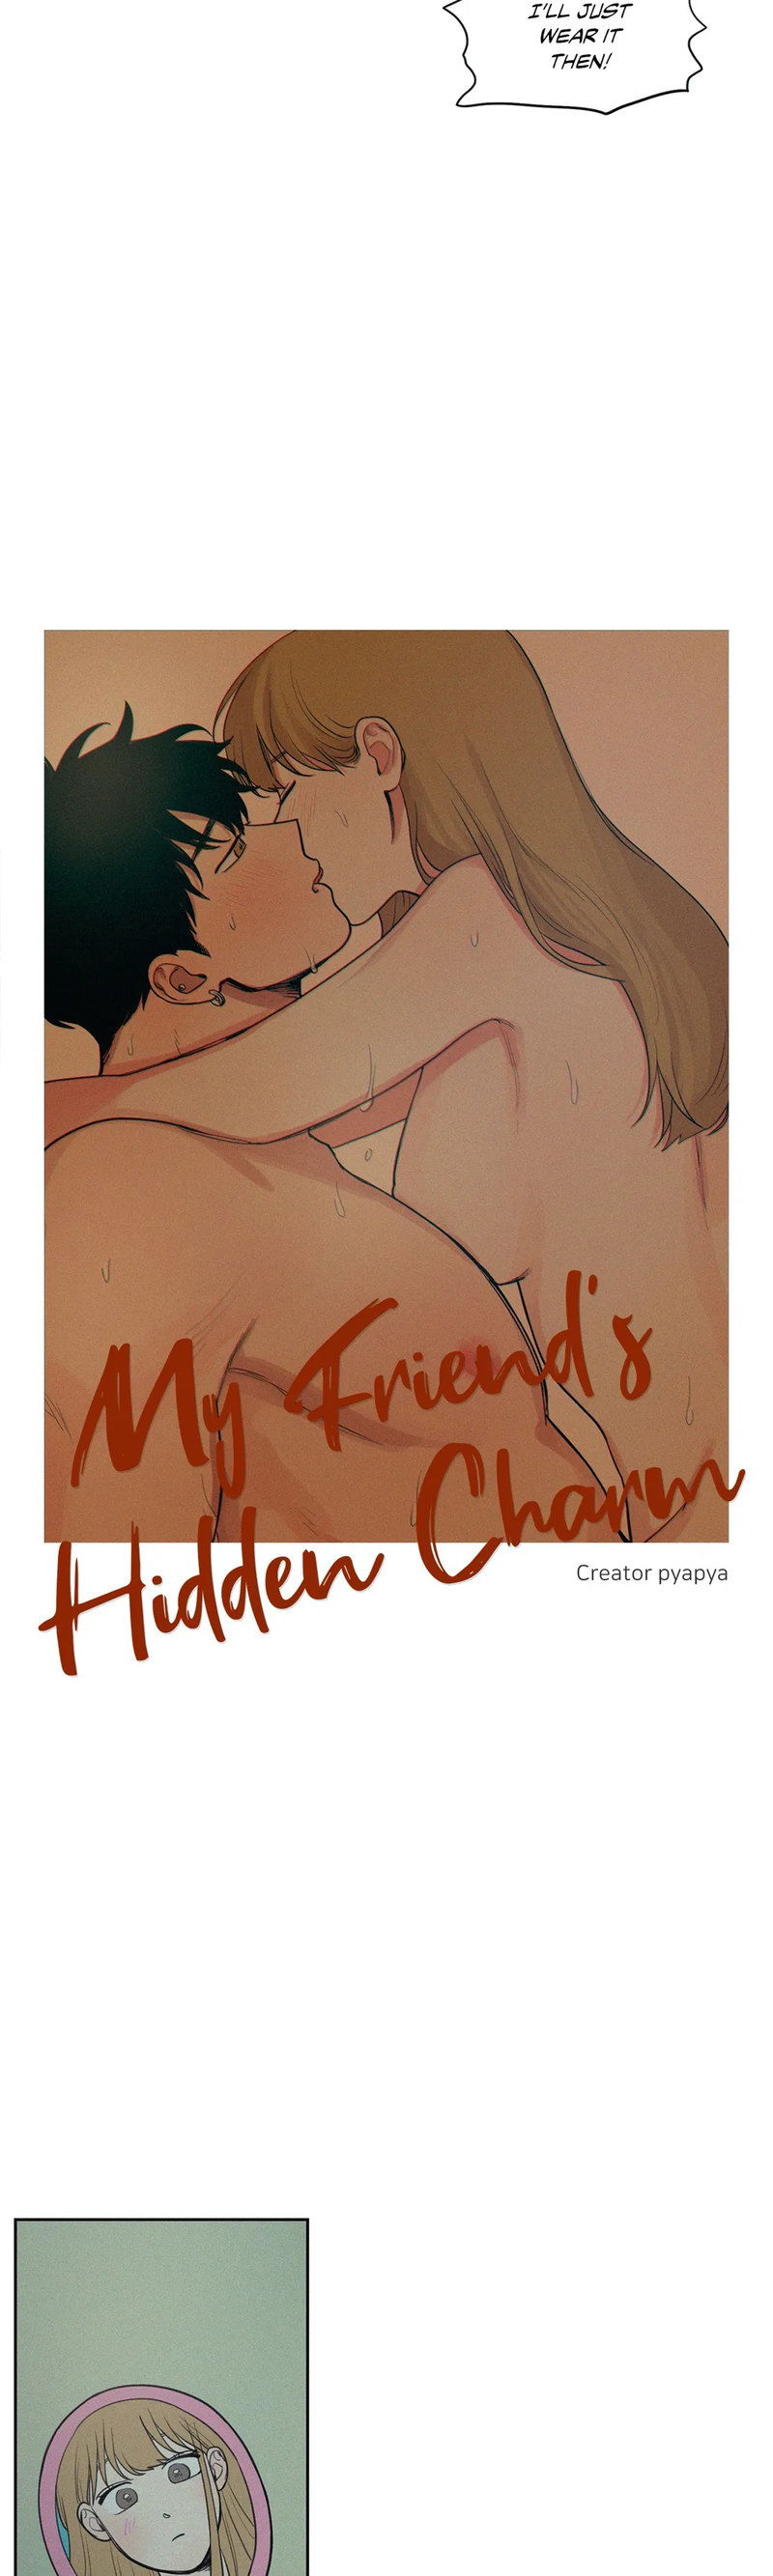 my-friends-hidden-charm-chap-30-1